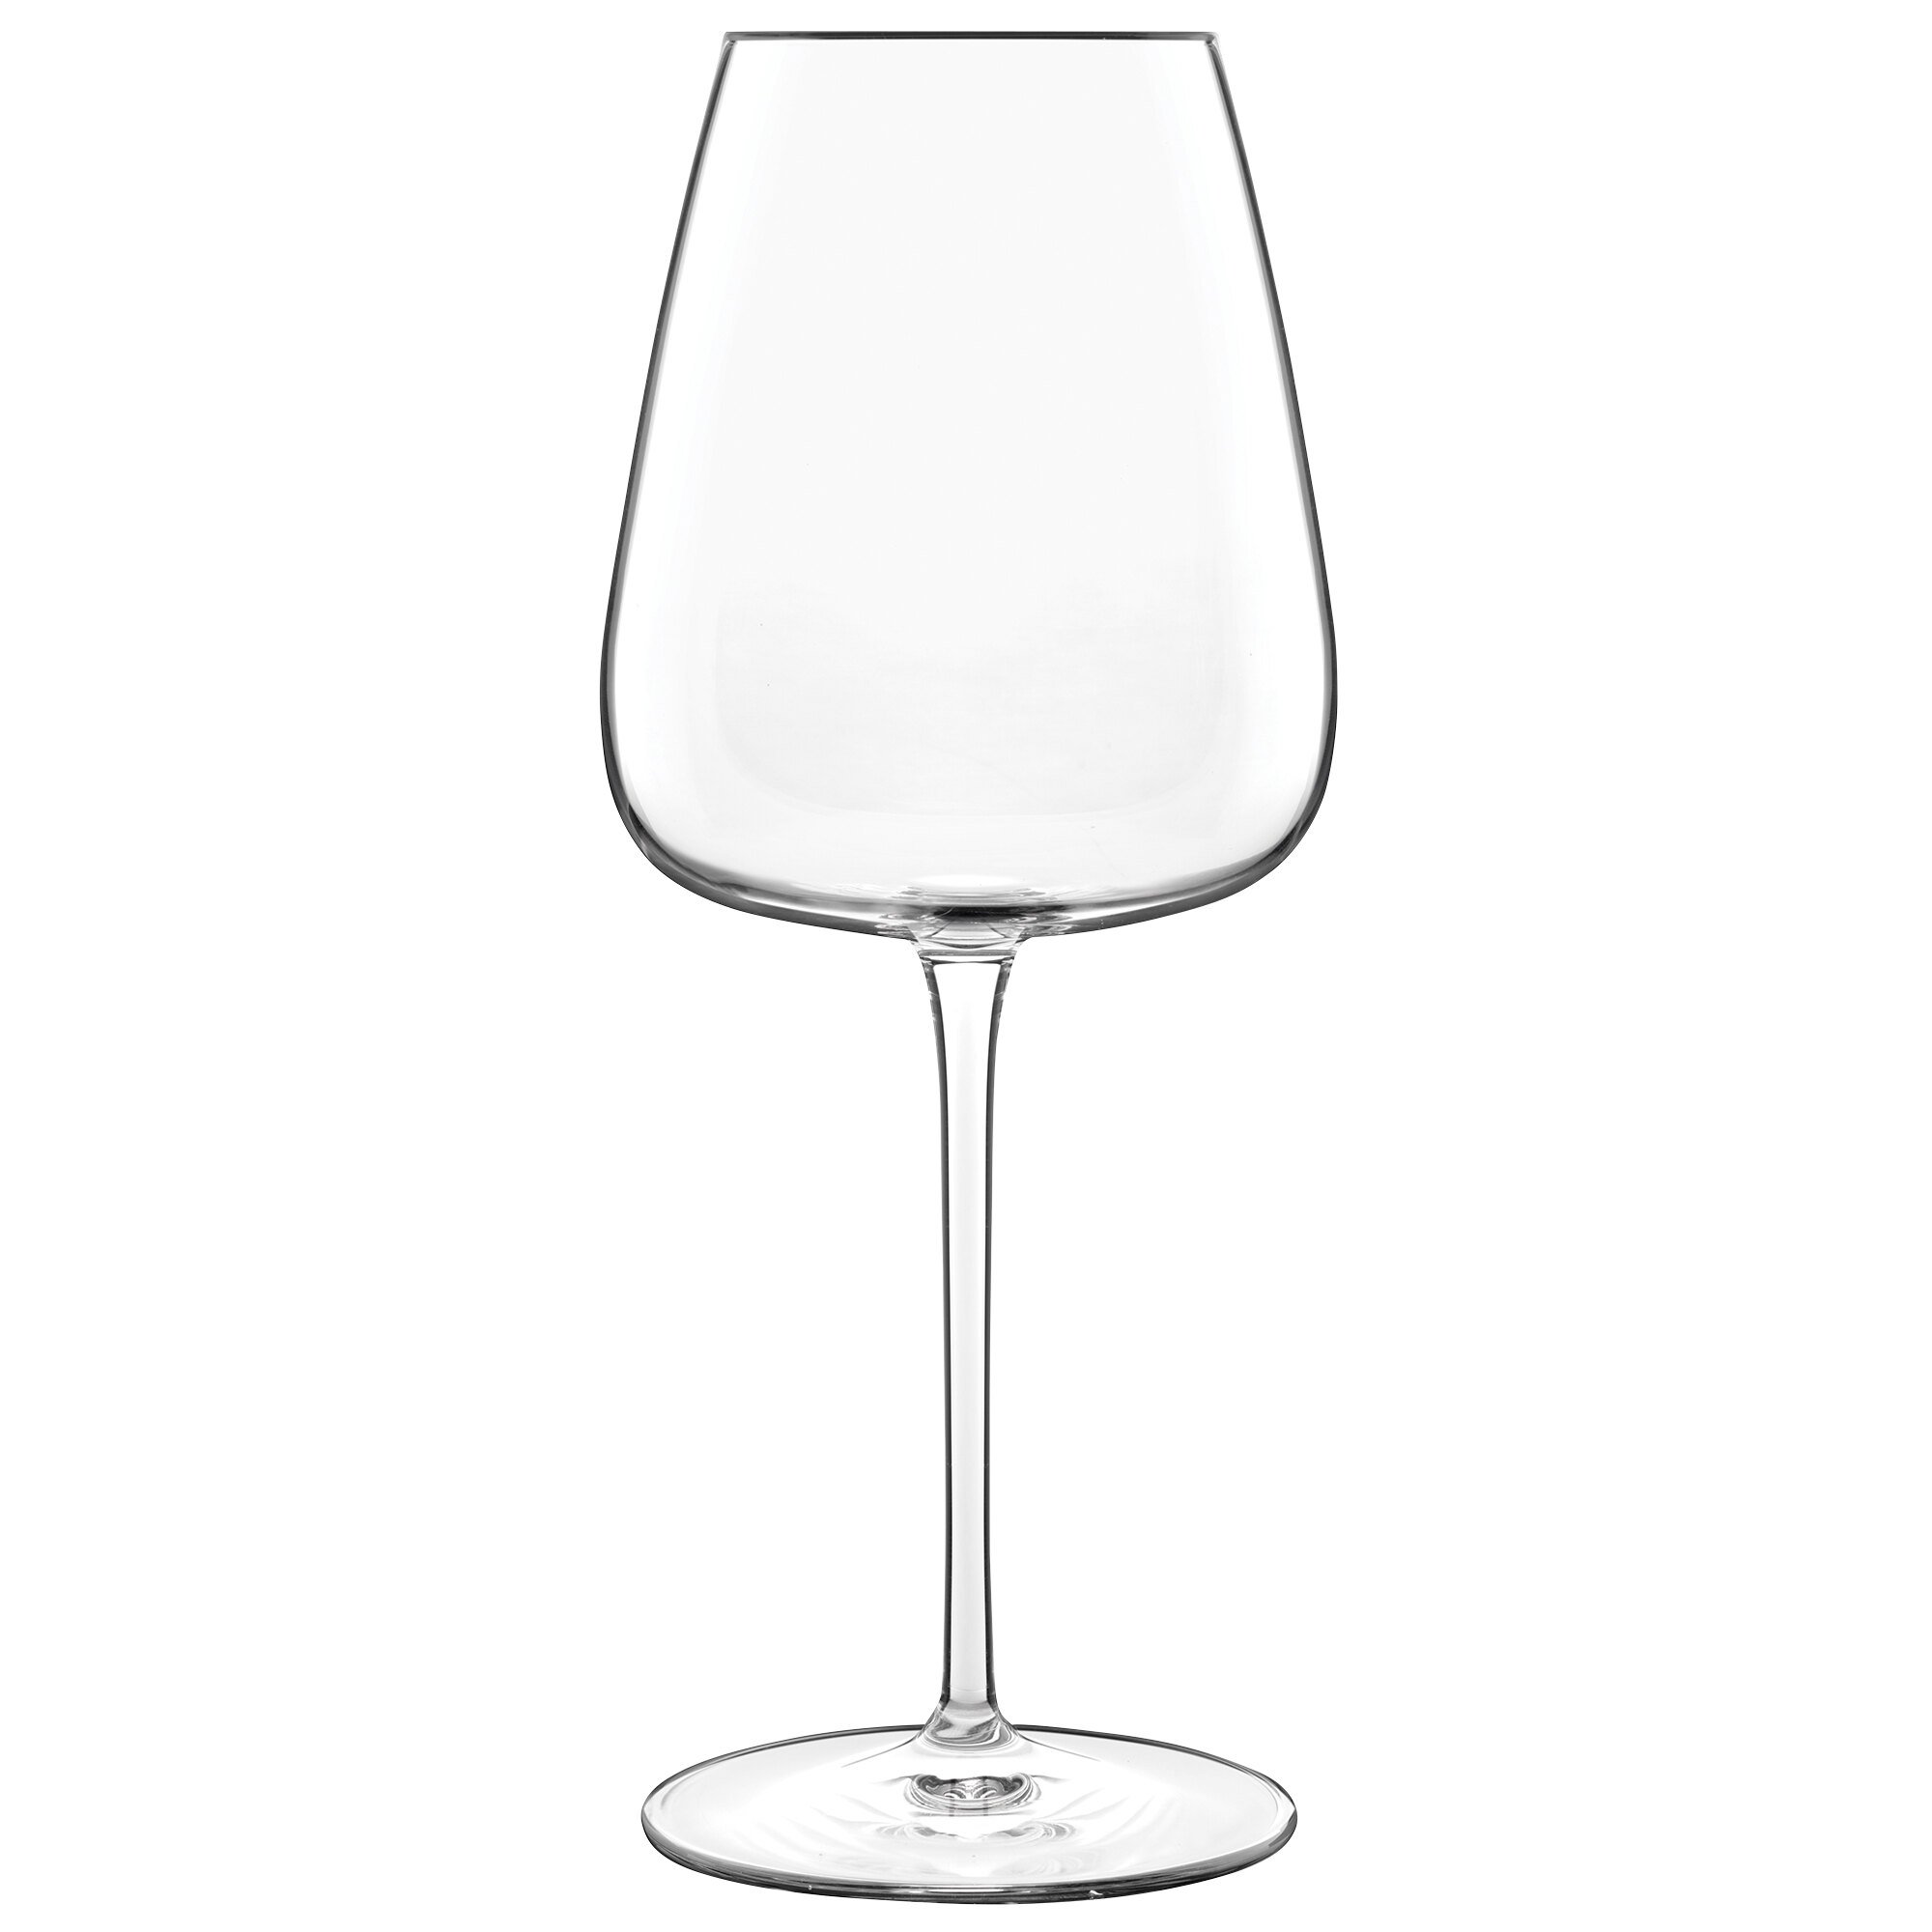 Rotweinglas leer, 700 ml, Serie I Meravigliosi, für Cabernet oder Merlot